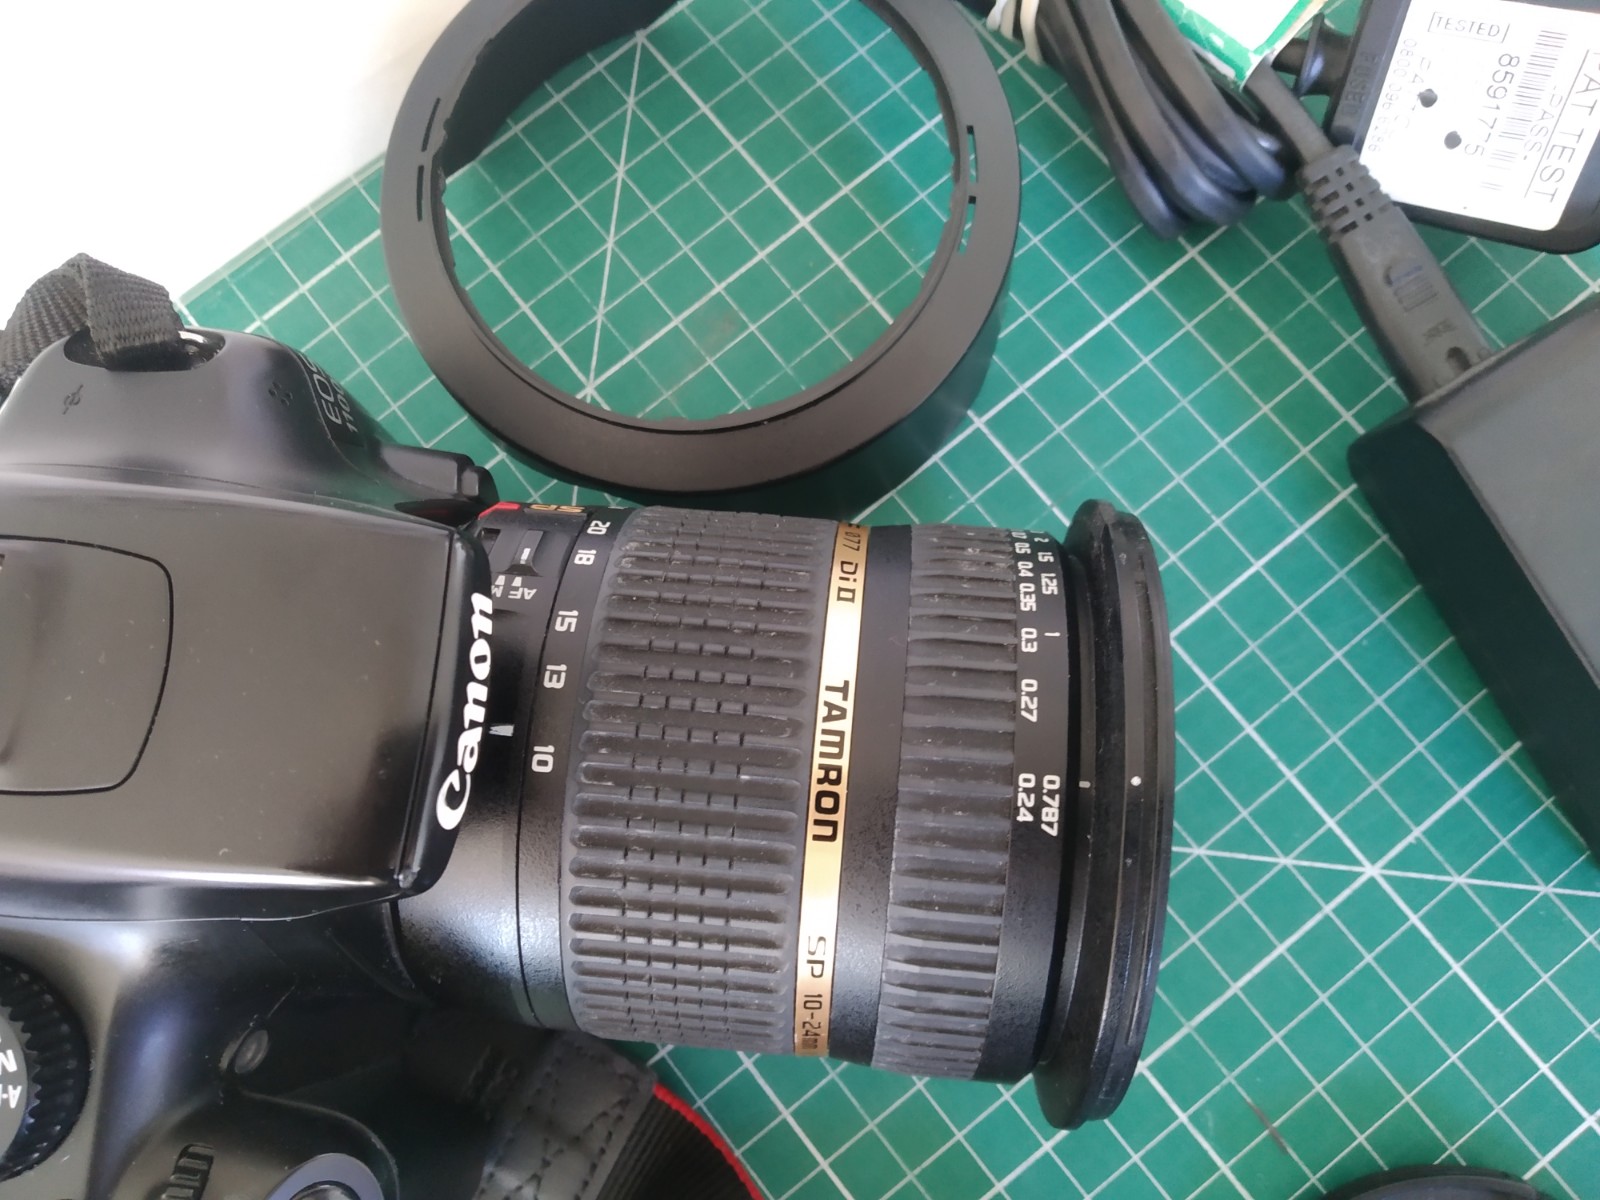 Canon 1100D + Tamron SP1 10-24mm f3.5-4.5 Di II Lens